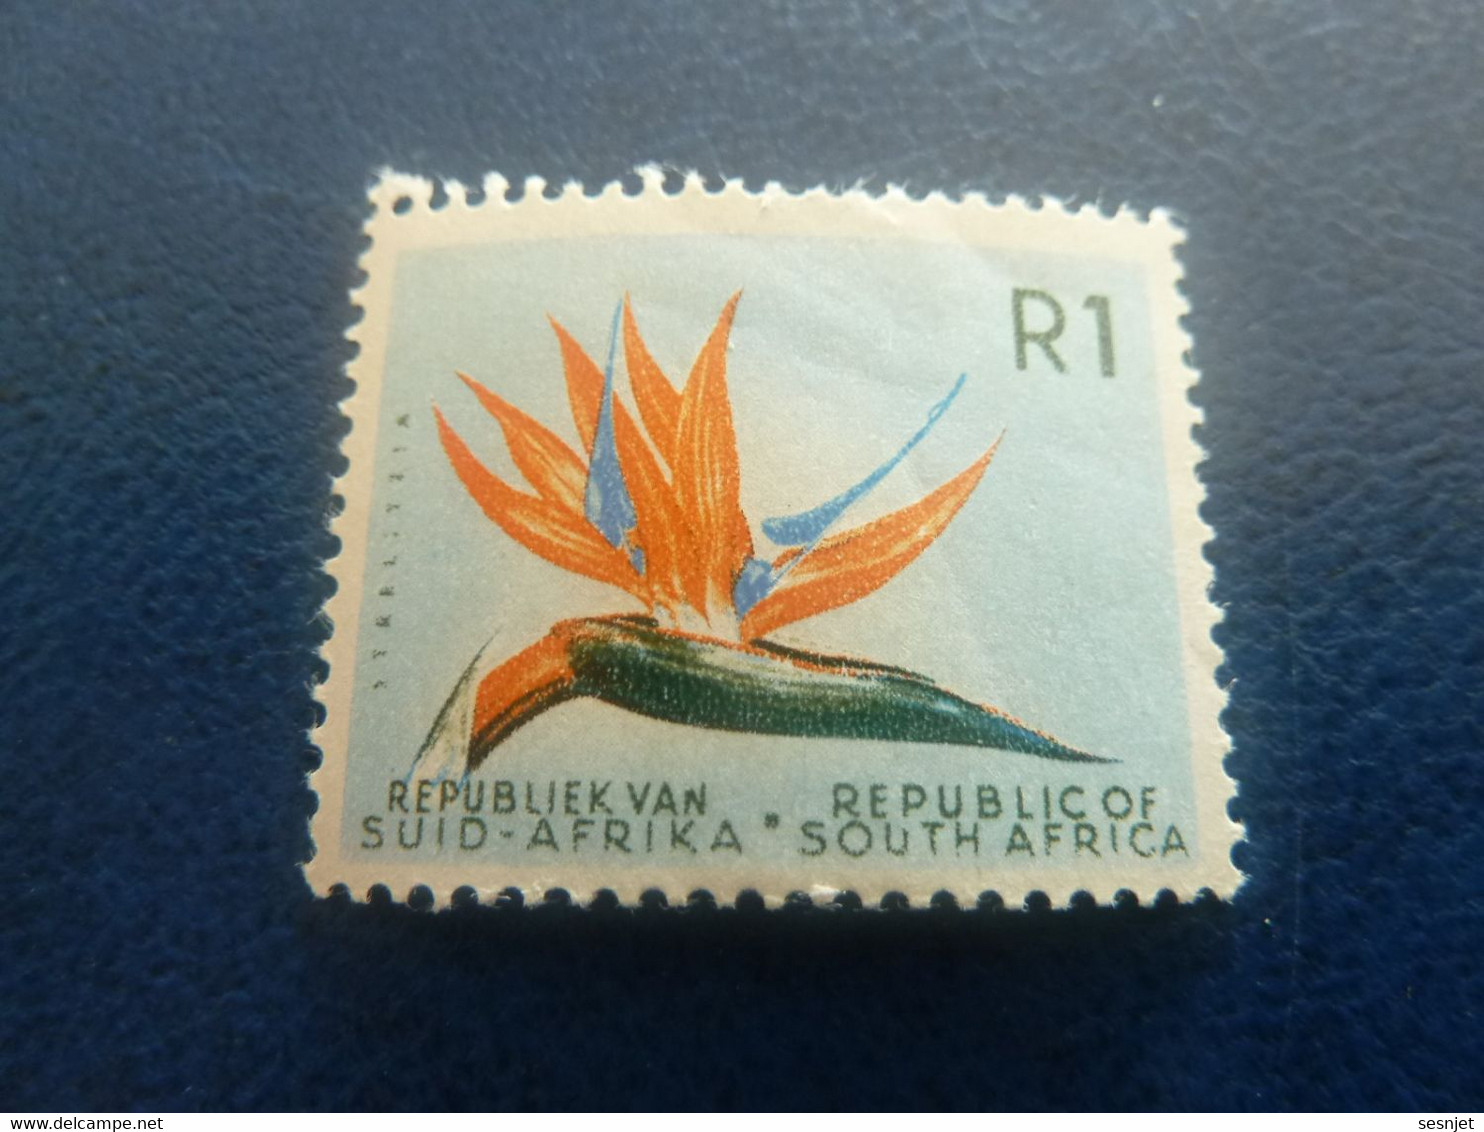 Republiek Van Suid-Africa - Botanique - R 1 - Multicolore - Neuf - - Unused Stamps